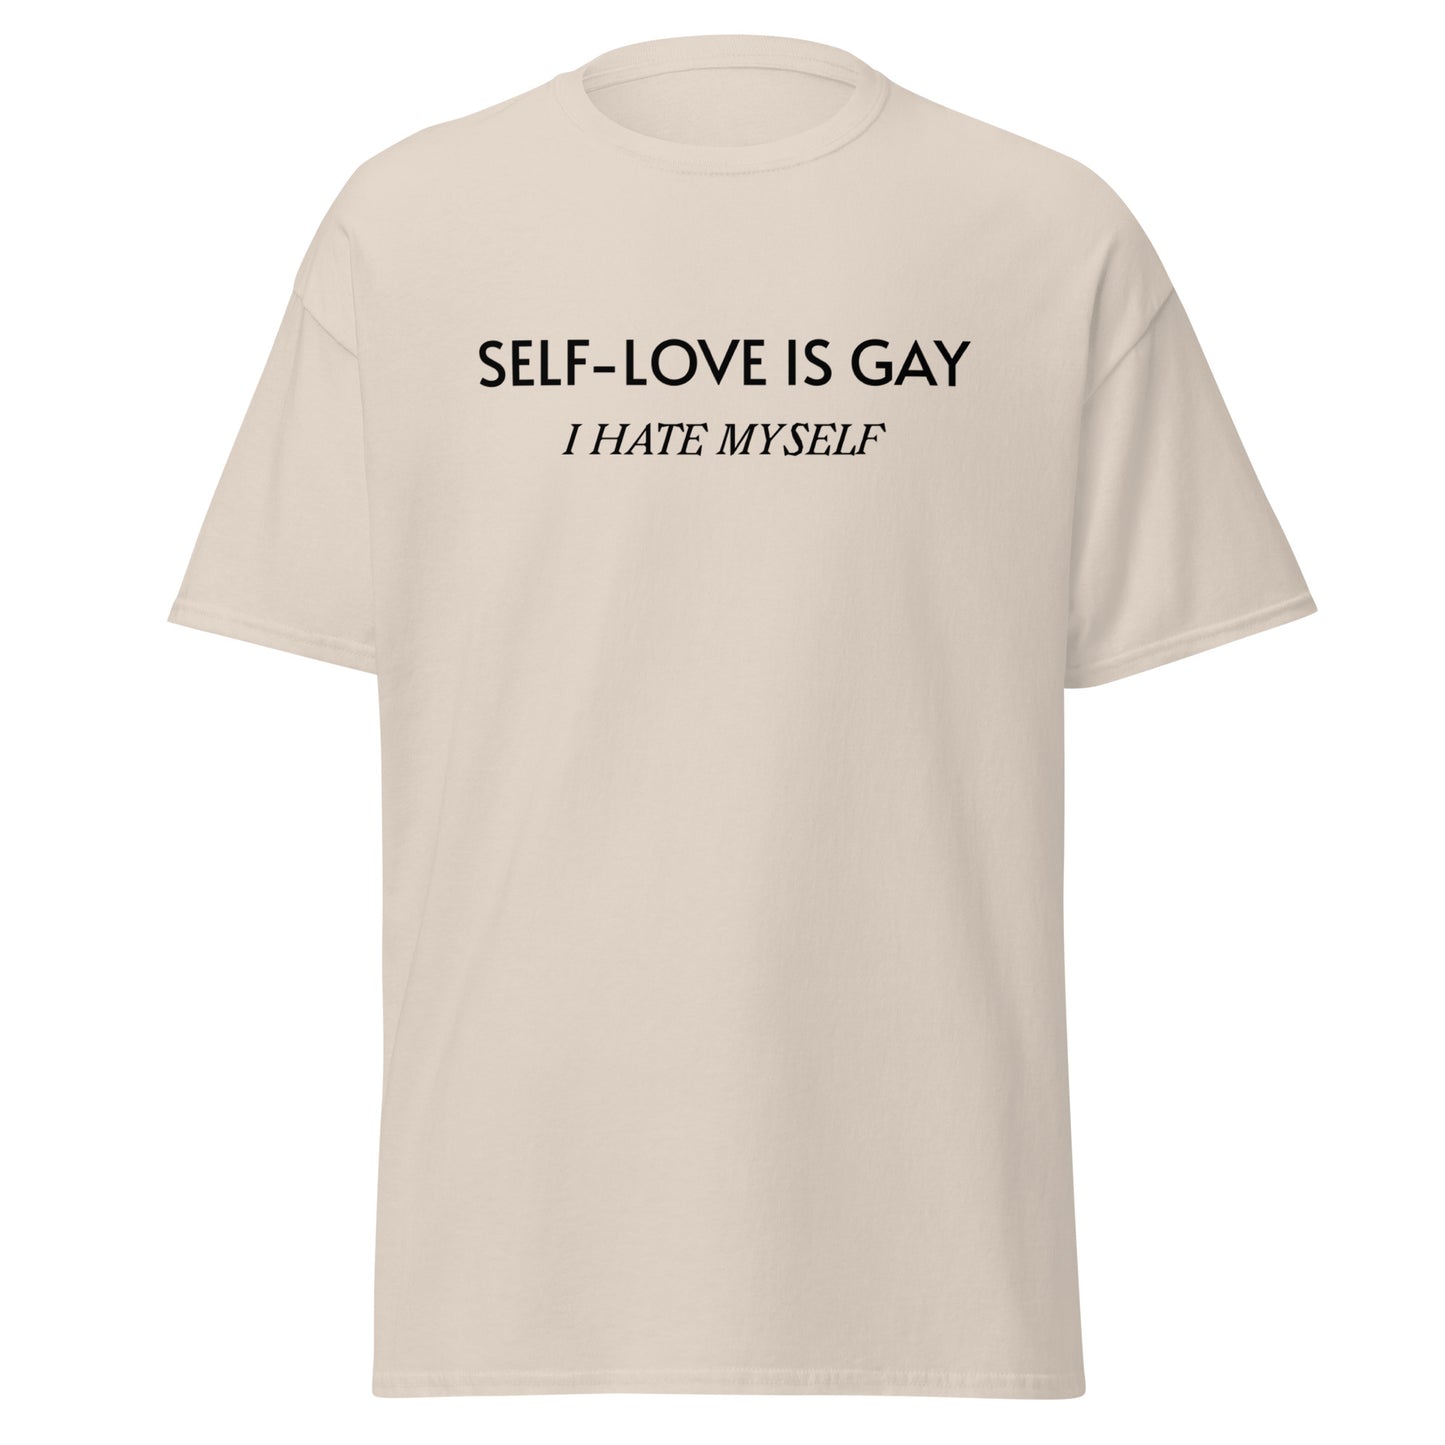 SELF-LOVE IS GAY